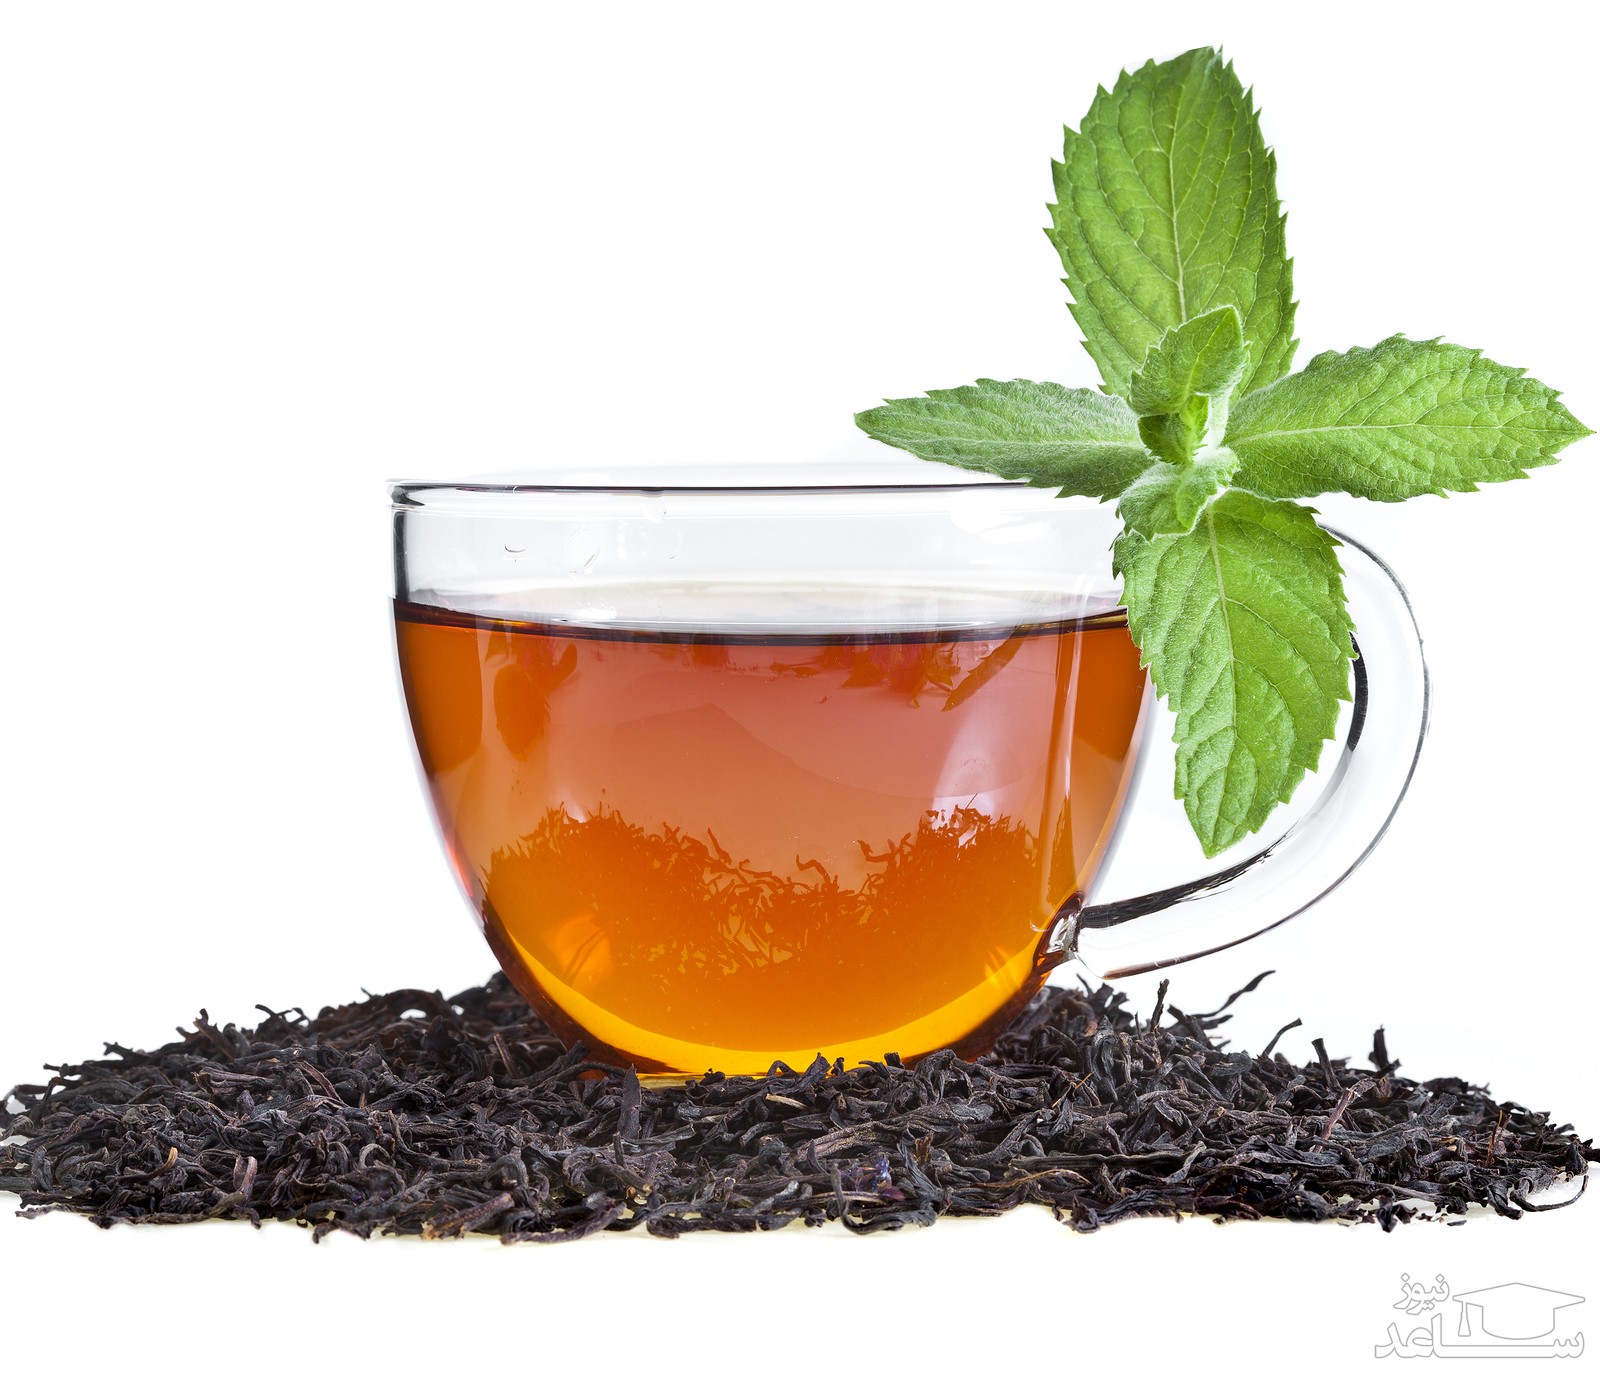 آیا مصرف چای سیاه و چای های لاغری باعث کاهش وزن میشود؟